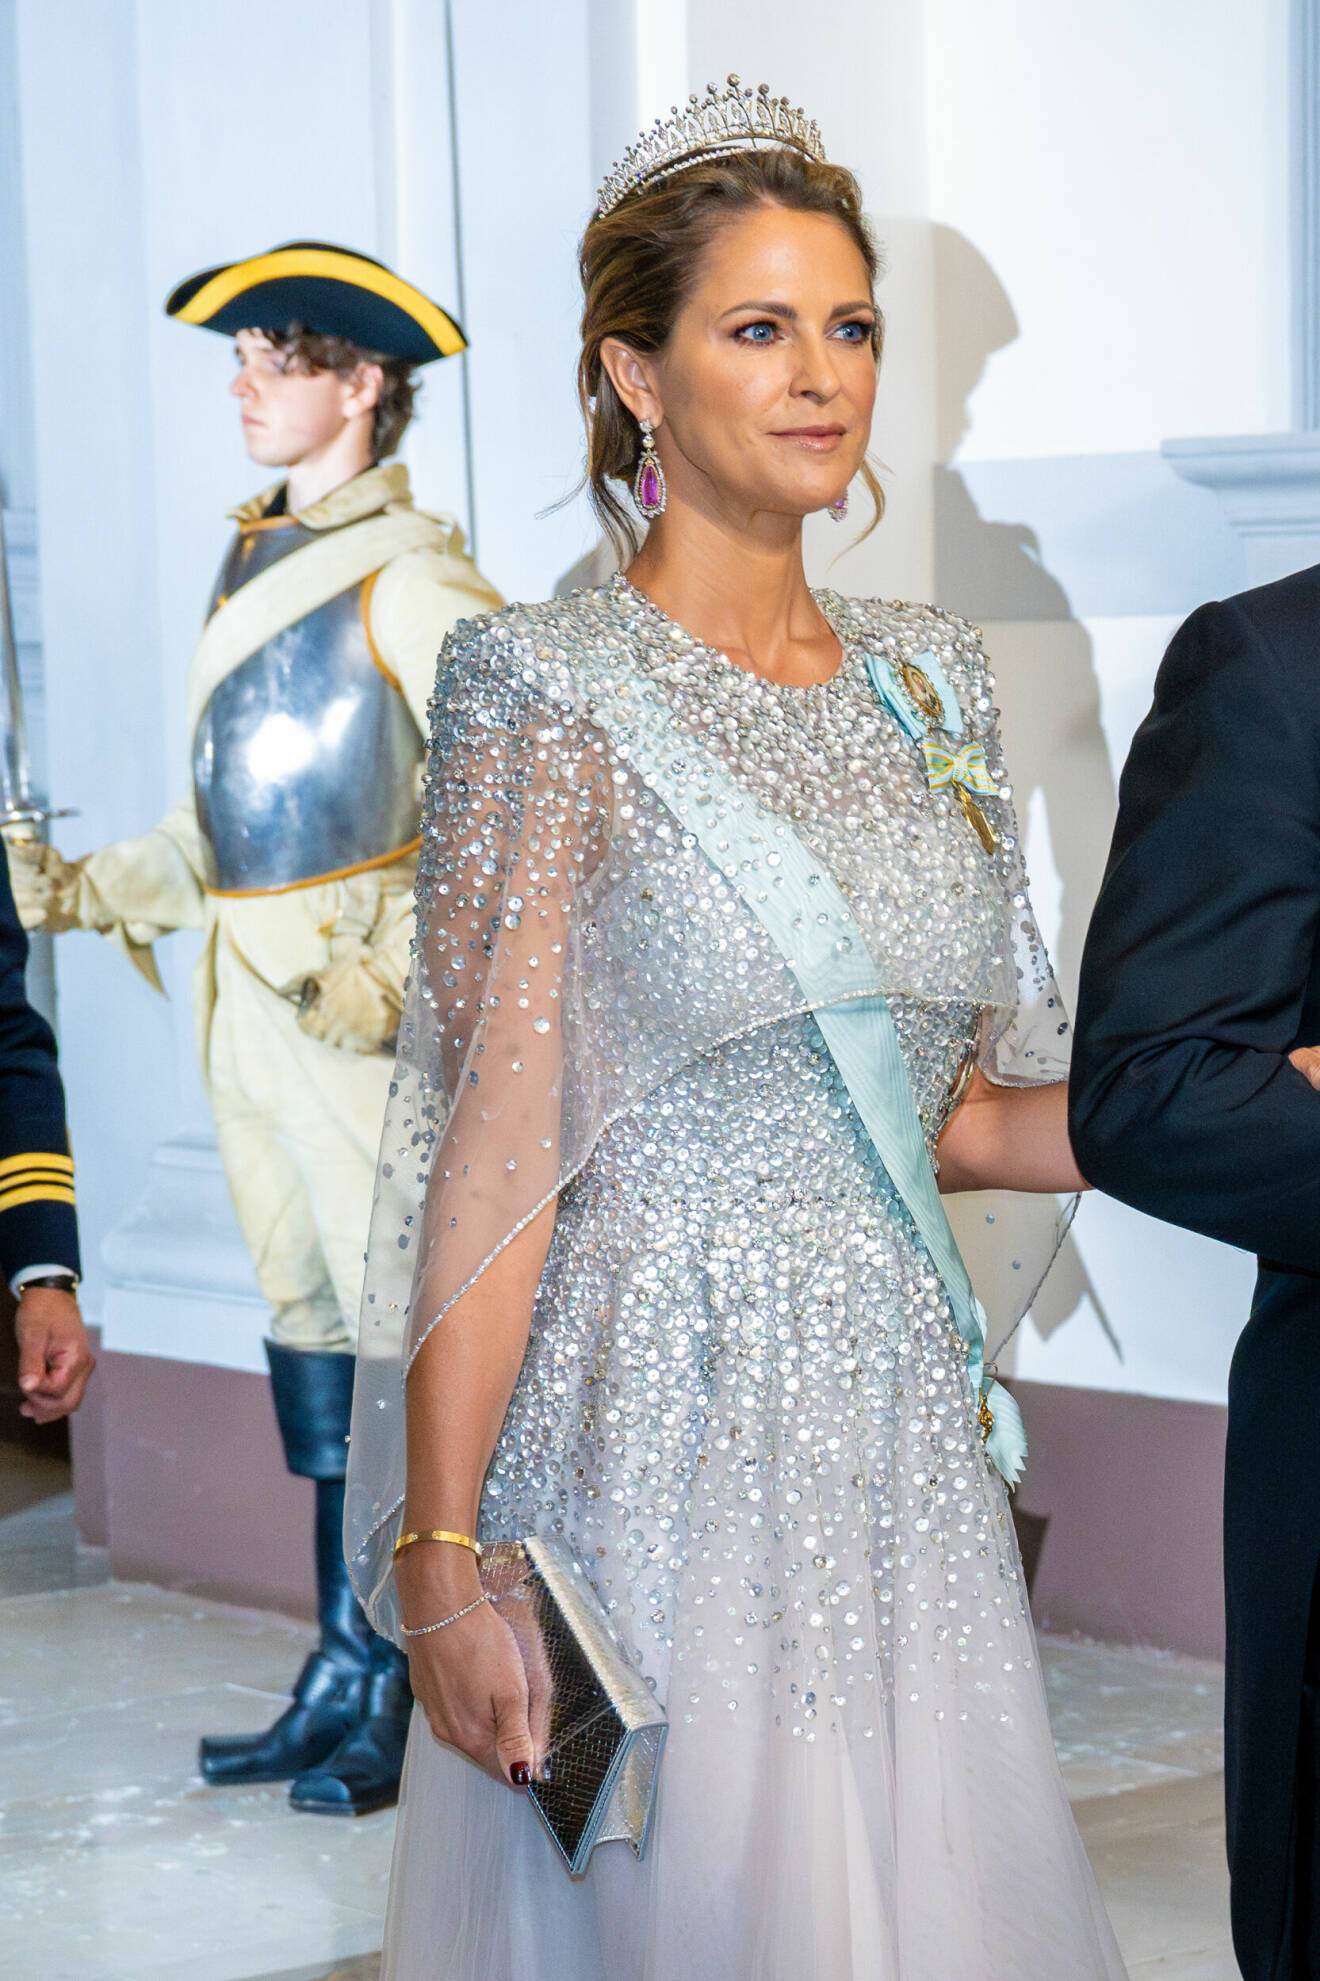 Prinsessan Madeleine i paljettklänning på middag på Stockholms slott – kungen 50 år på tronen